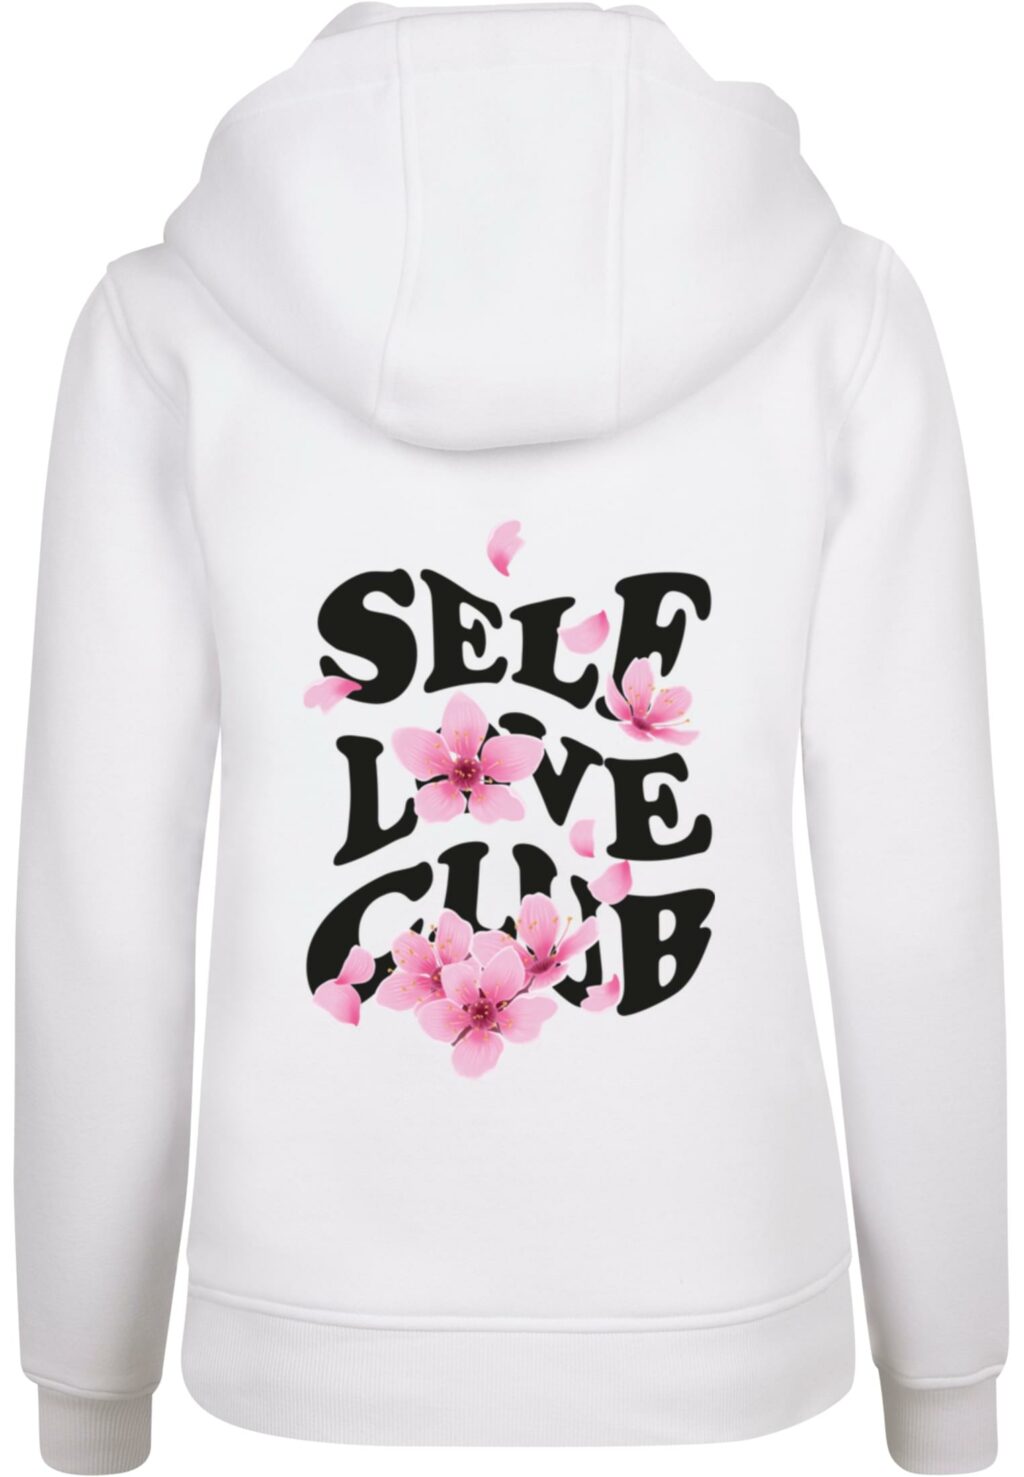 Self Love Club Hoody white MST041